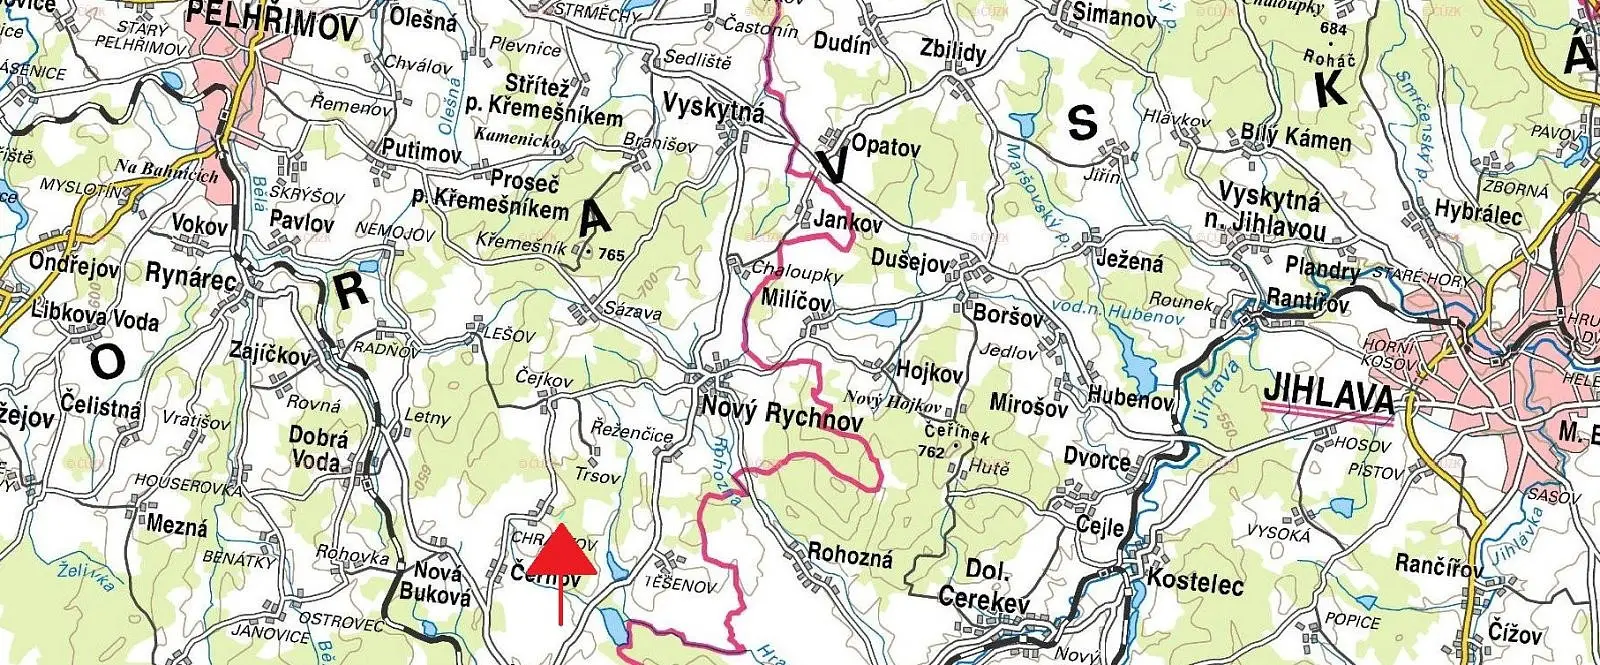 Horní Cerekev - Těšenov, okres Pelhřimov